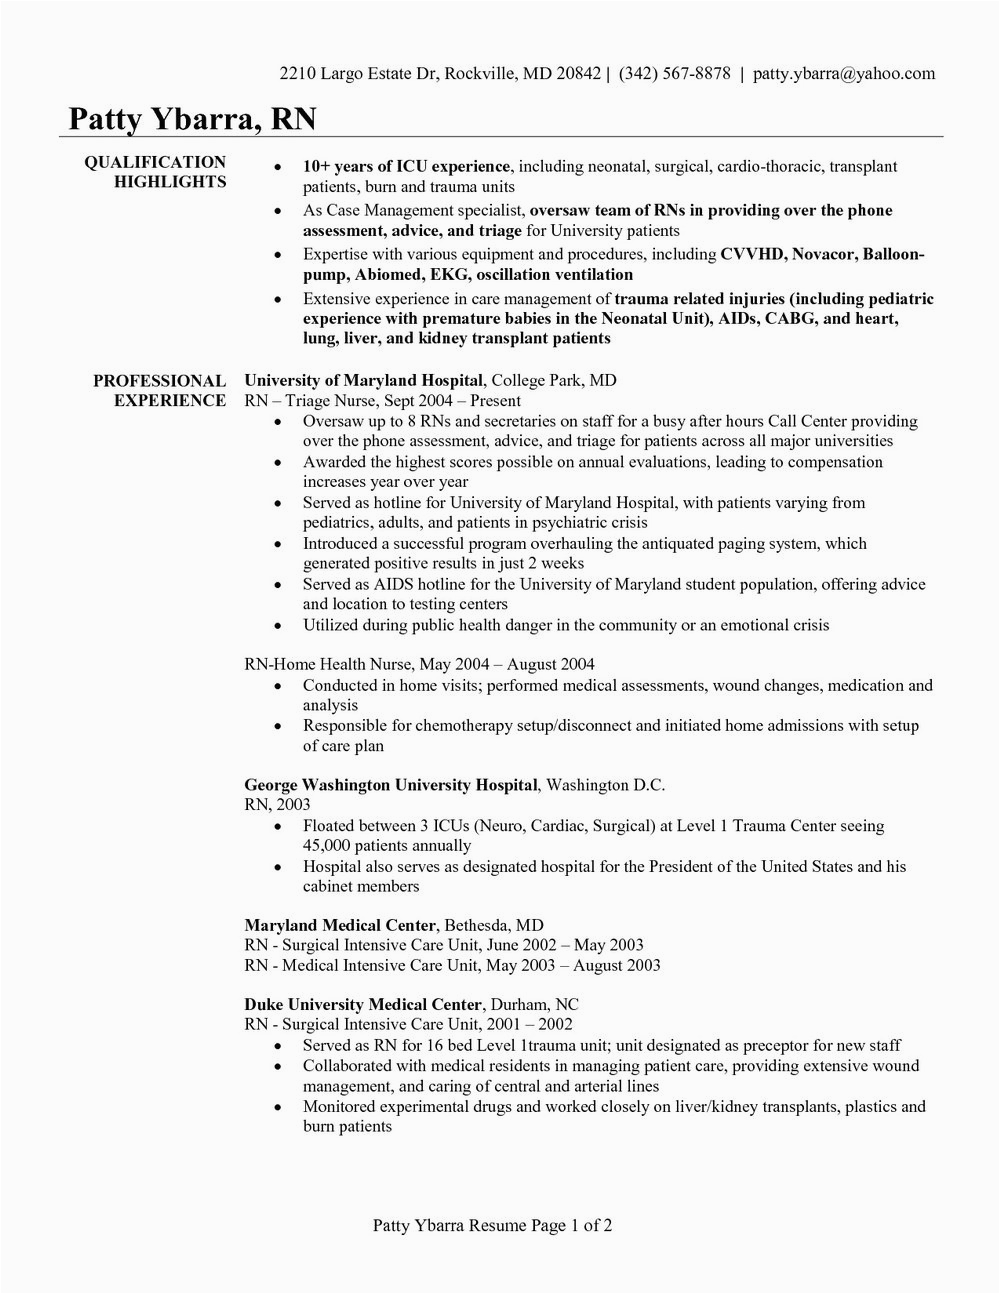 Registered Nurse Resume Sample format Australia Registered Nurse Resume Template Australia